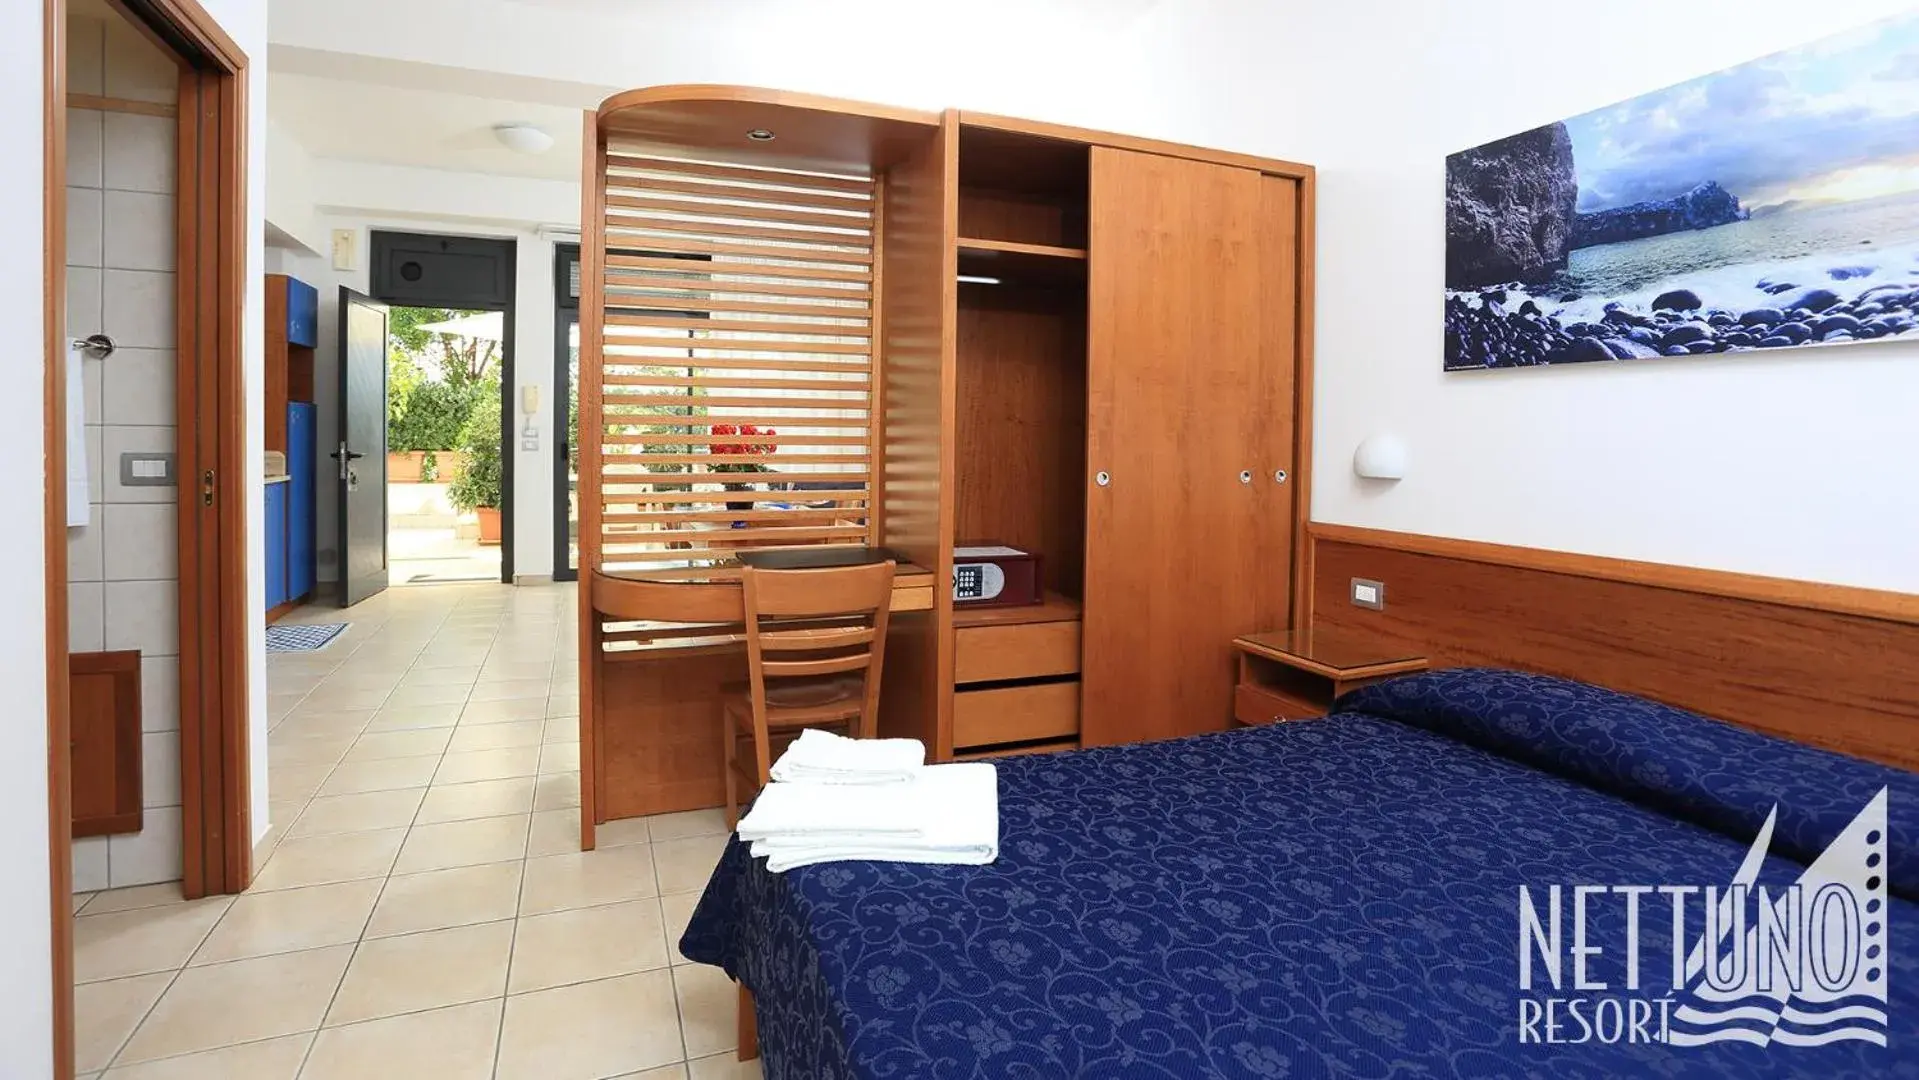 Bedroom in Nettuno Resort